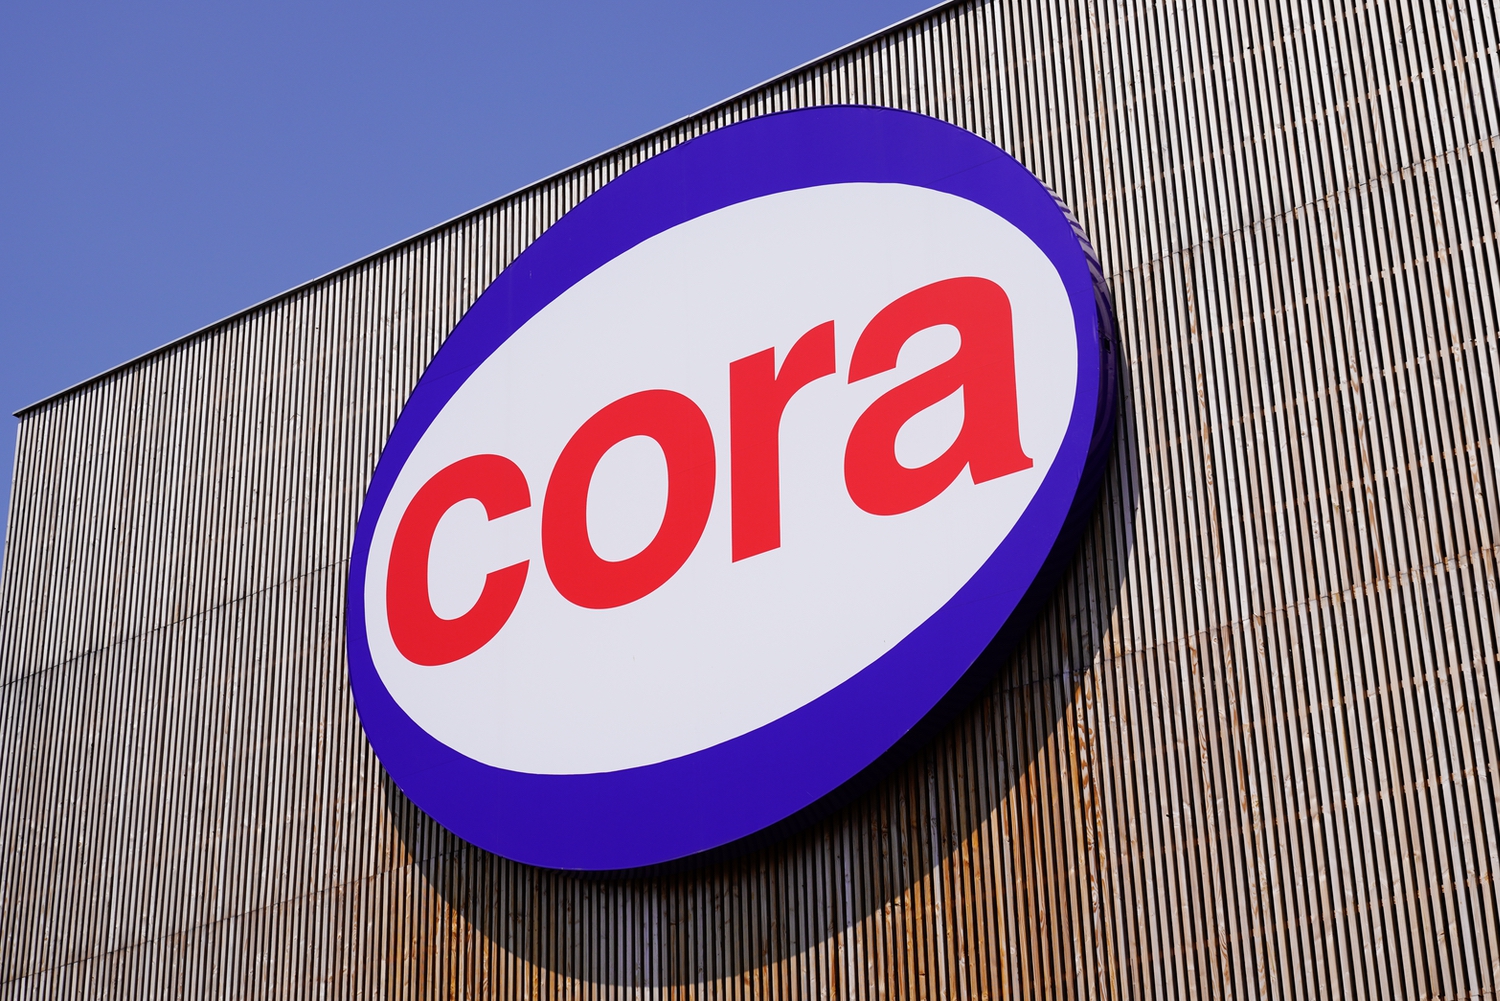 Cora devient Carrefour